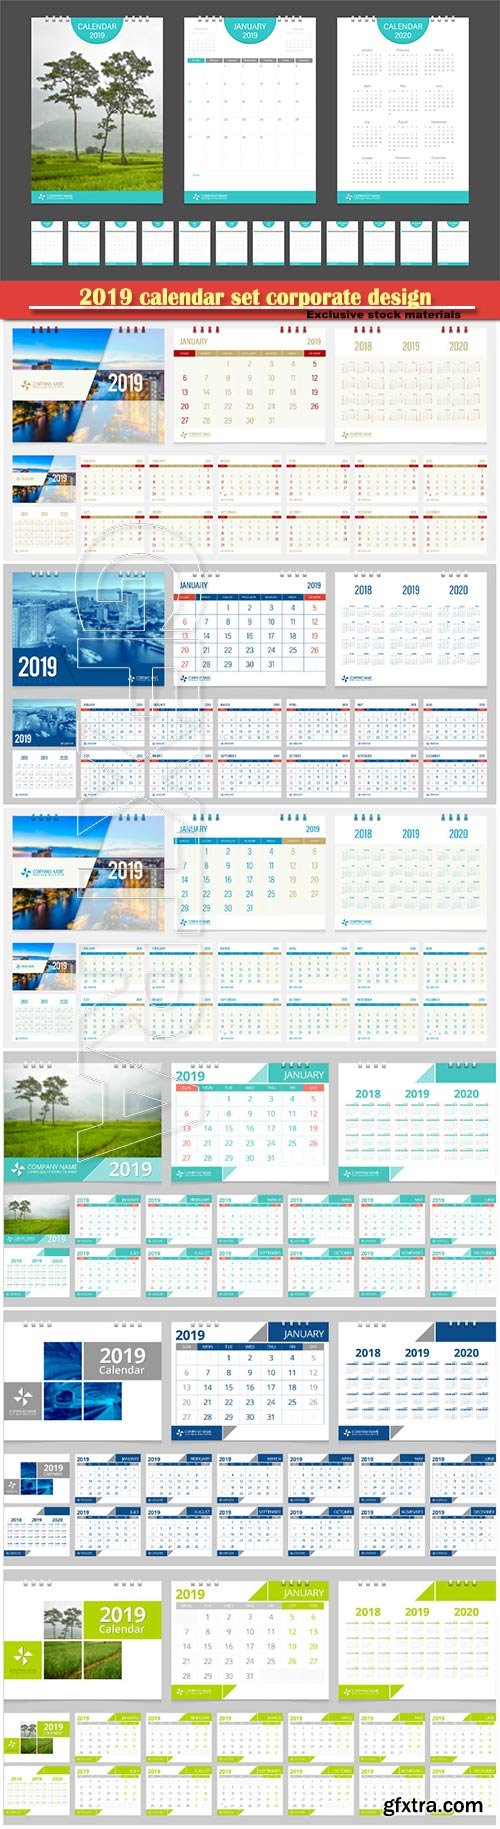 2019 calendar set corporate design template vector